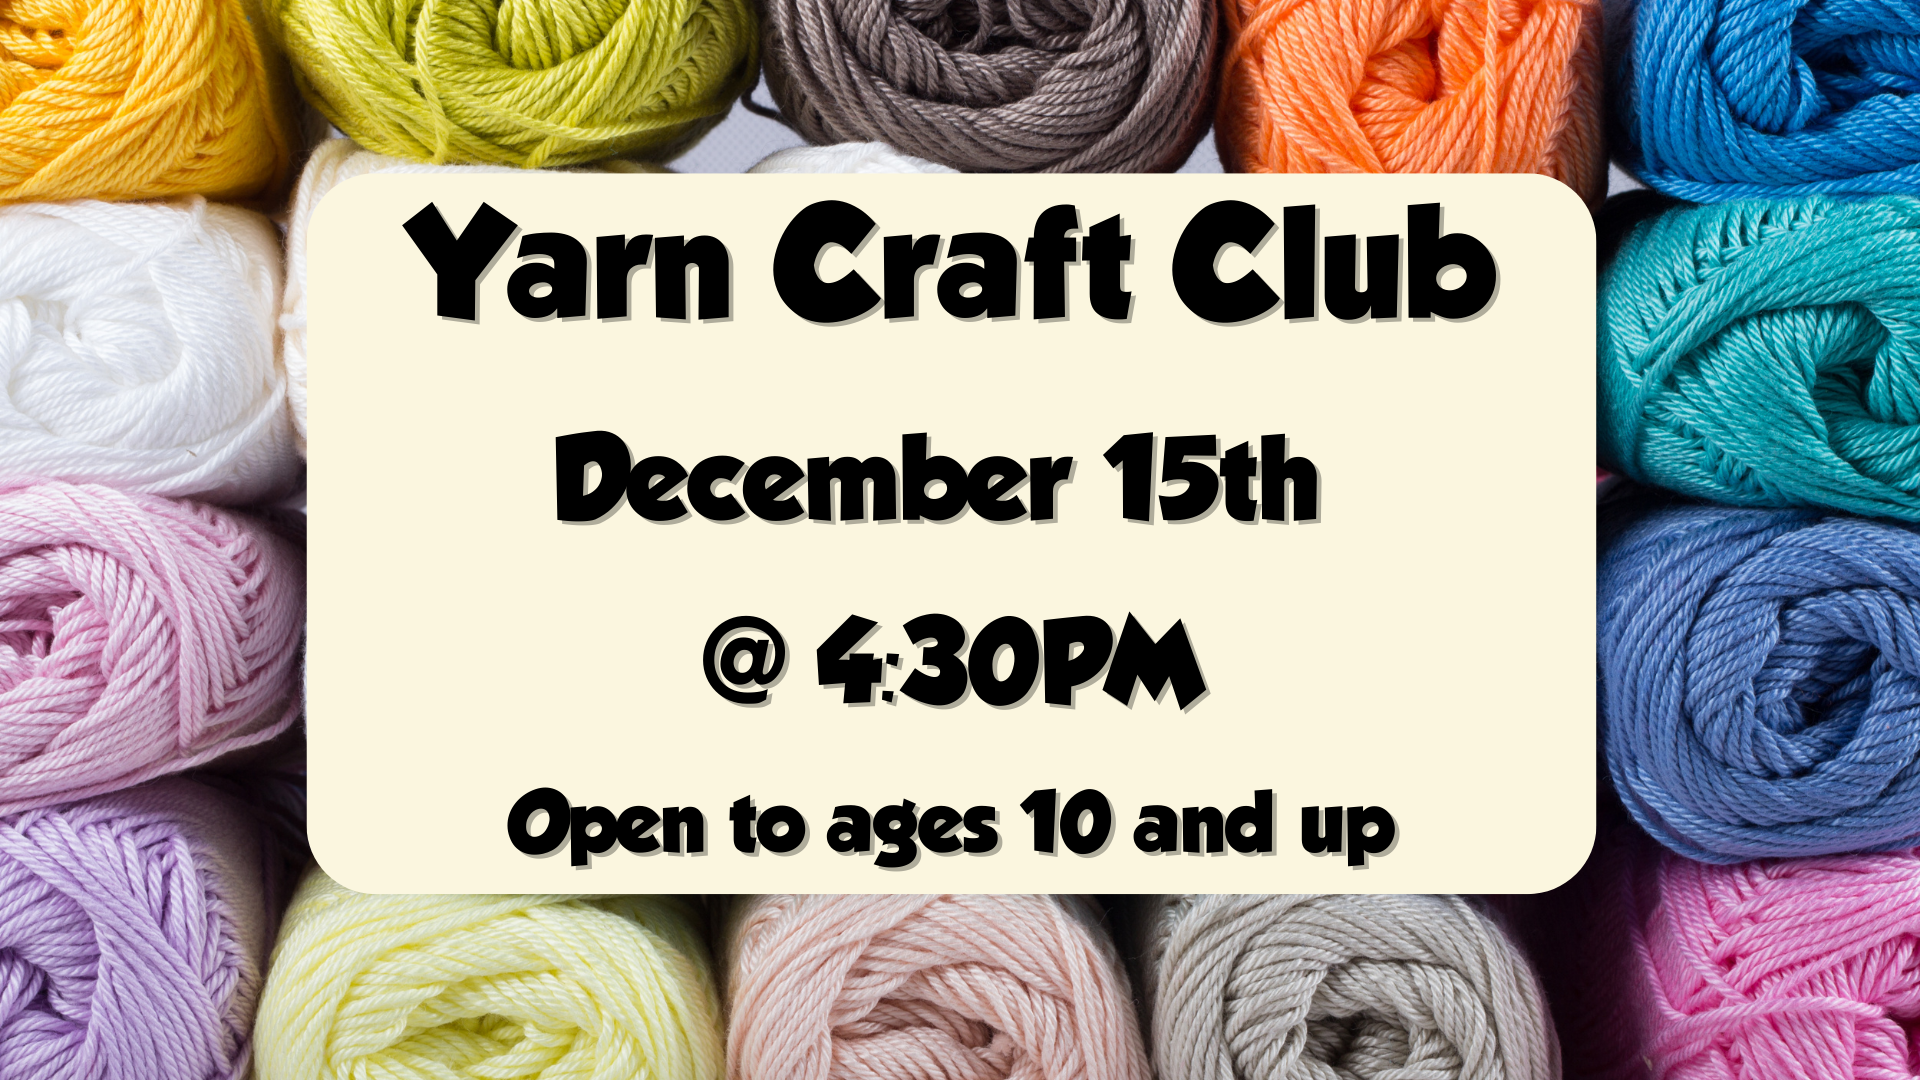 Yarn Craft Club, December 15th at 4:30pm